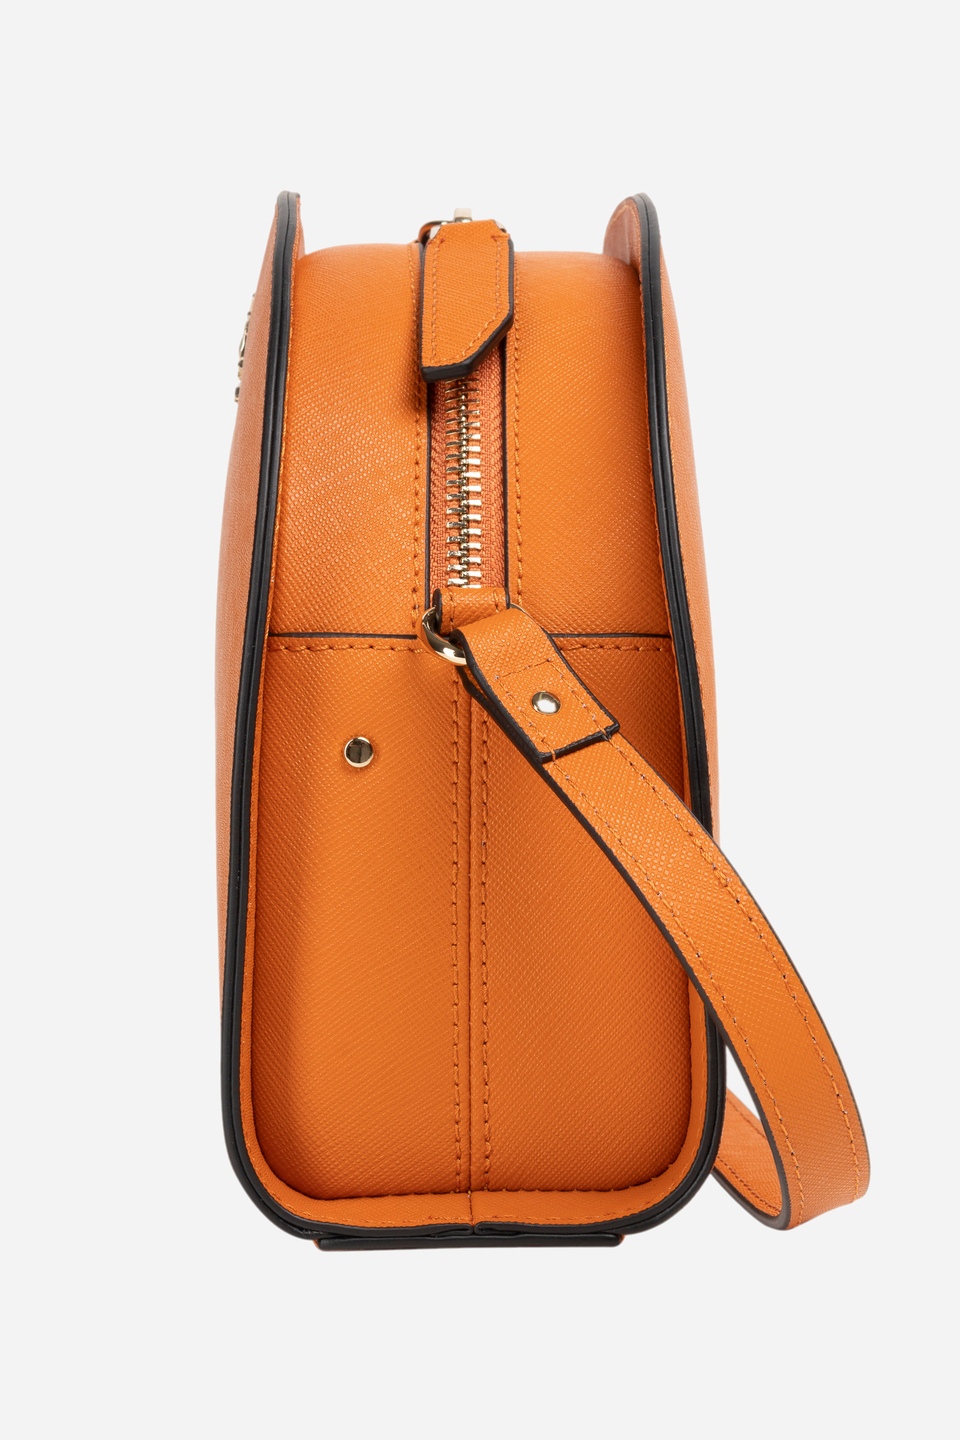 Leather shoulder bag - Karina | La Martina - Official Online Shop